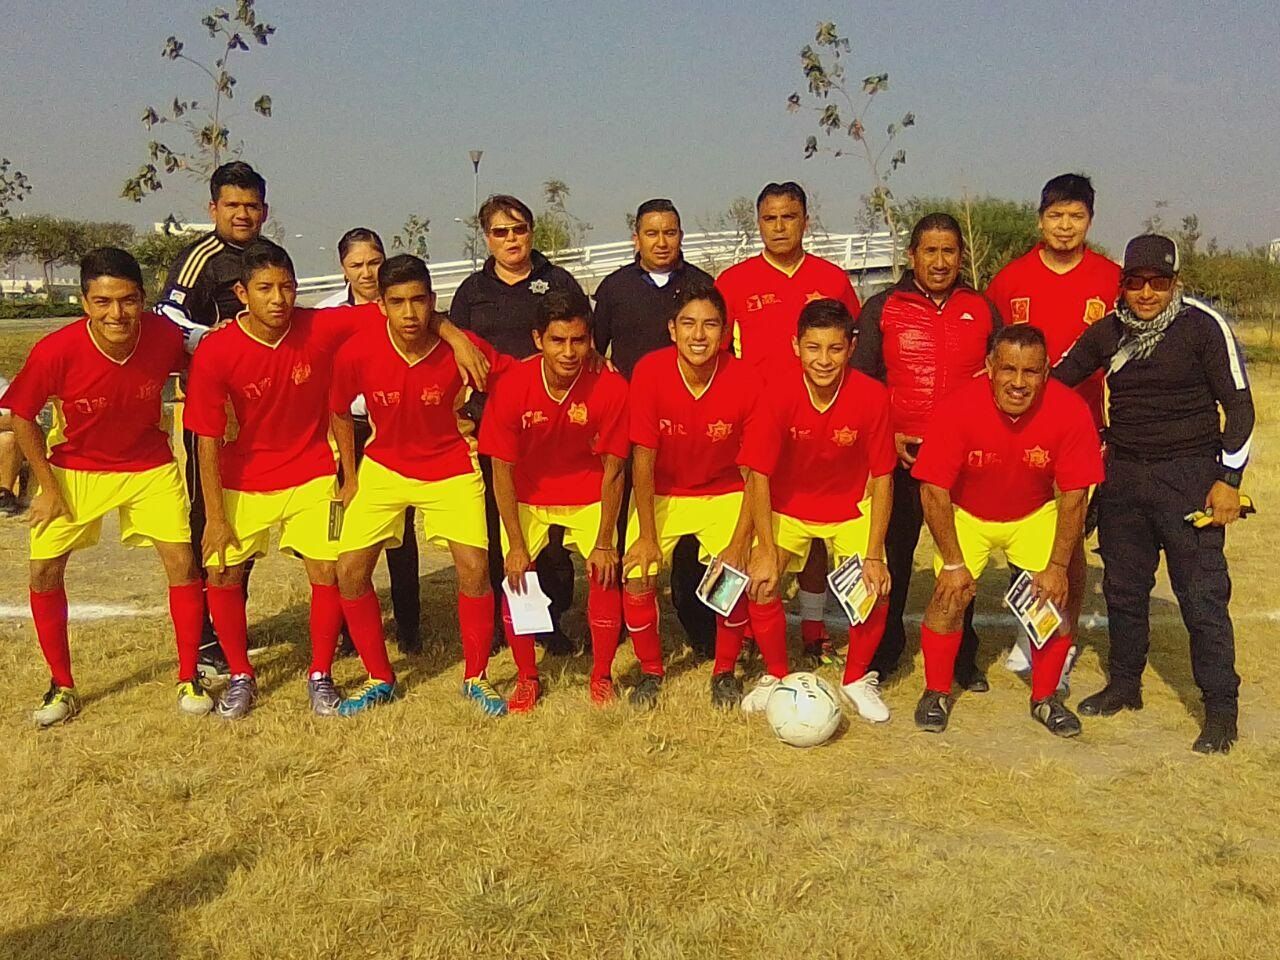  

Avanza con éxito Poli Torneo  de fútbol redes vecinales de seguridad  por cuadra en Nezahualcòyotl
